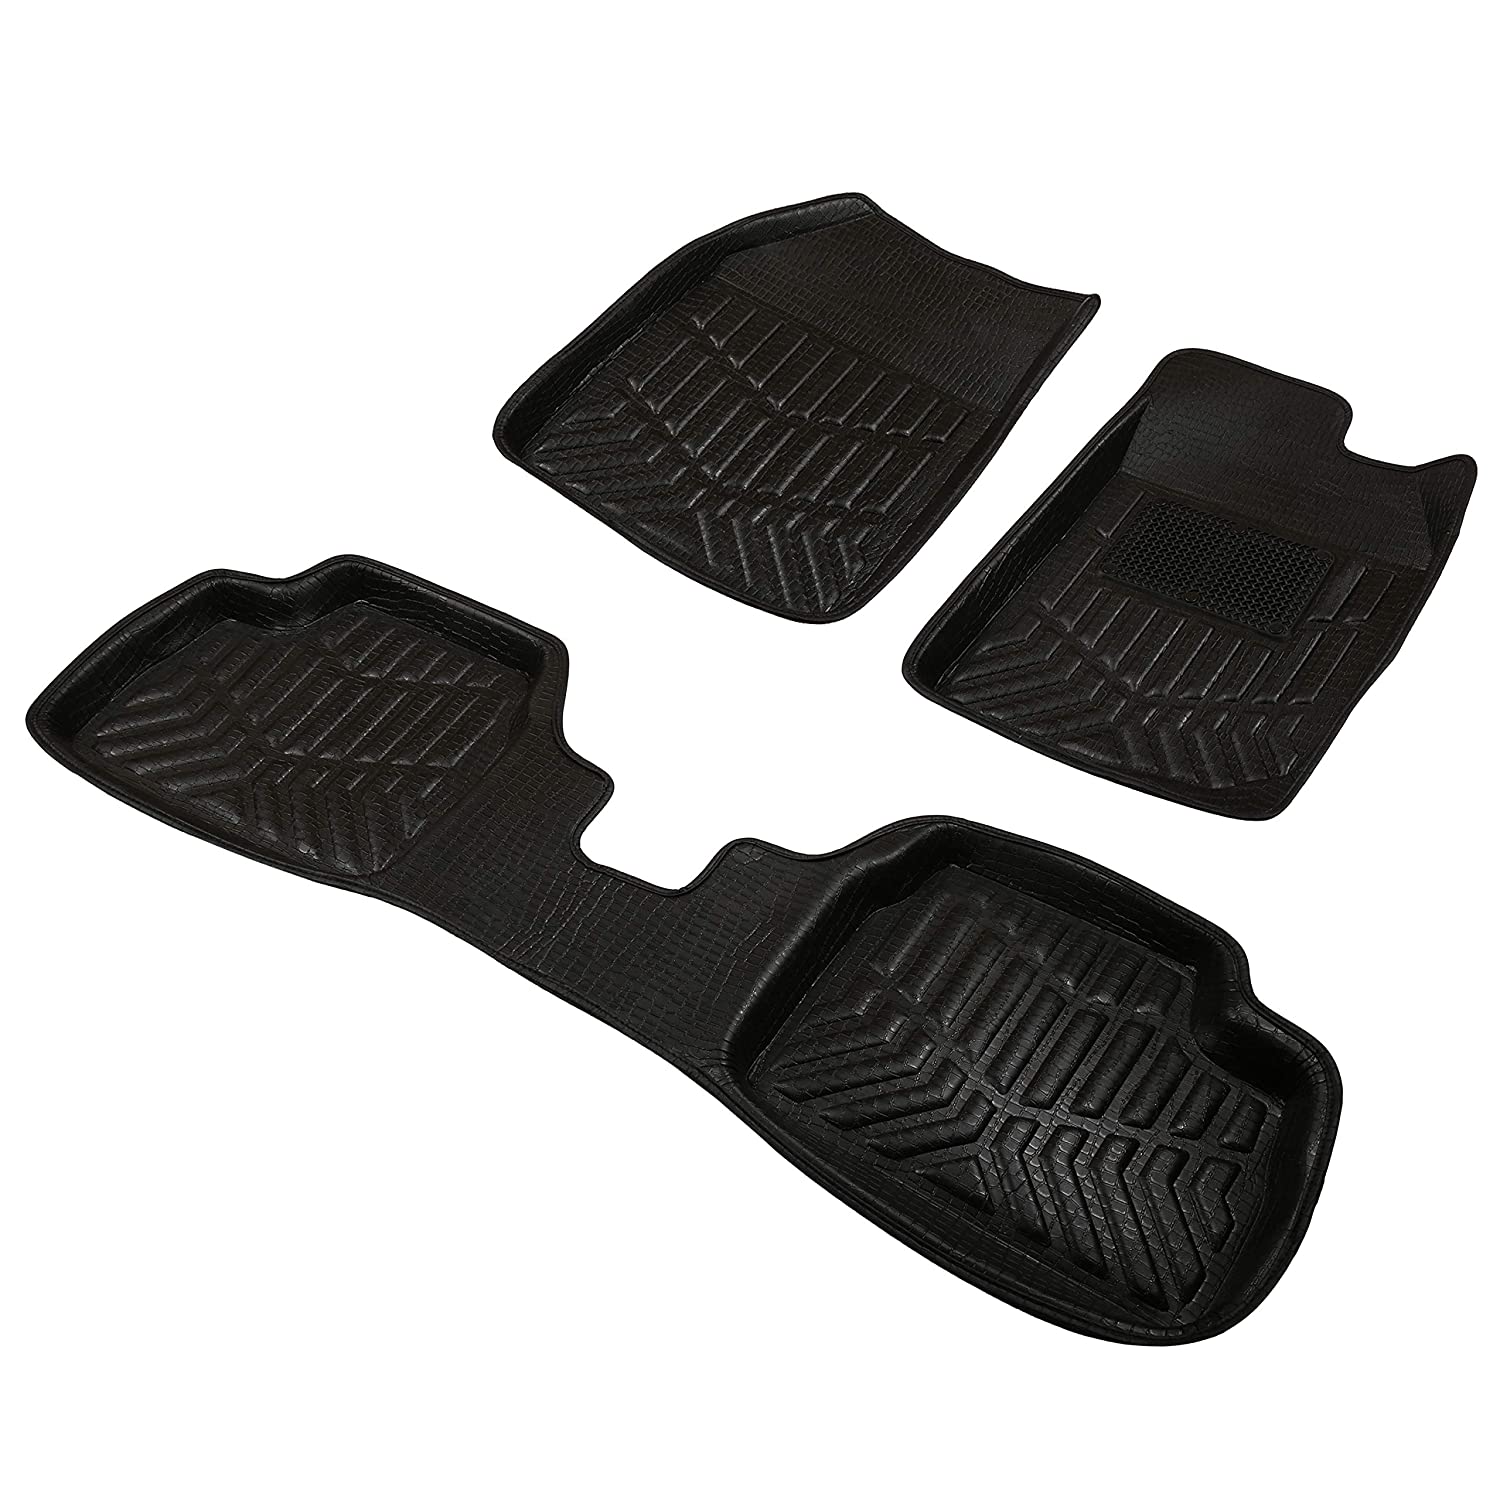 Drivn 3D Customised Car Floor Mat for Ford Figo - Black (Set of 3)